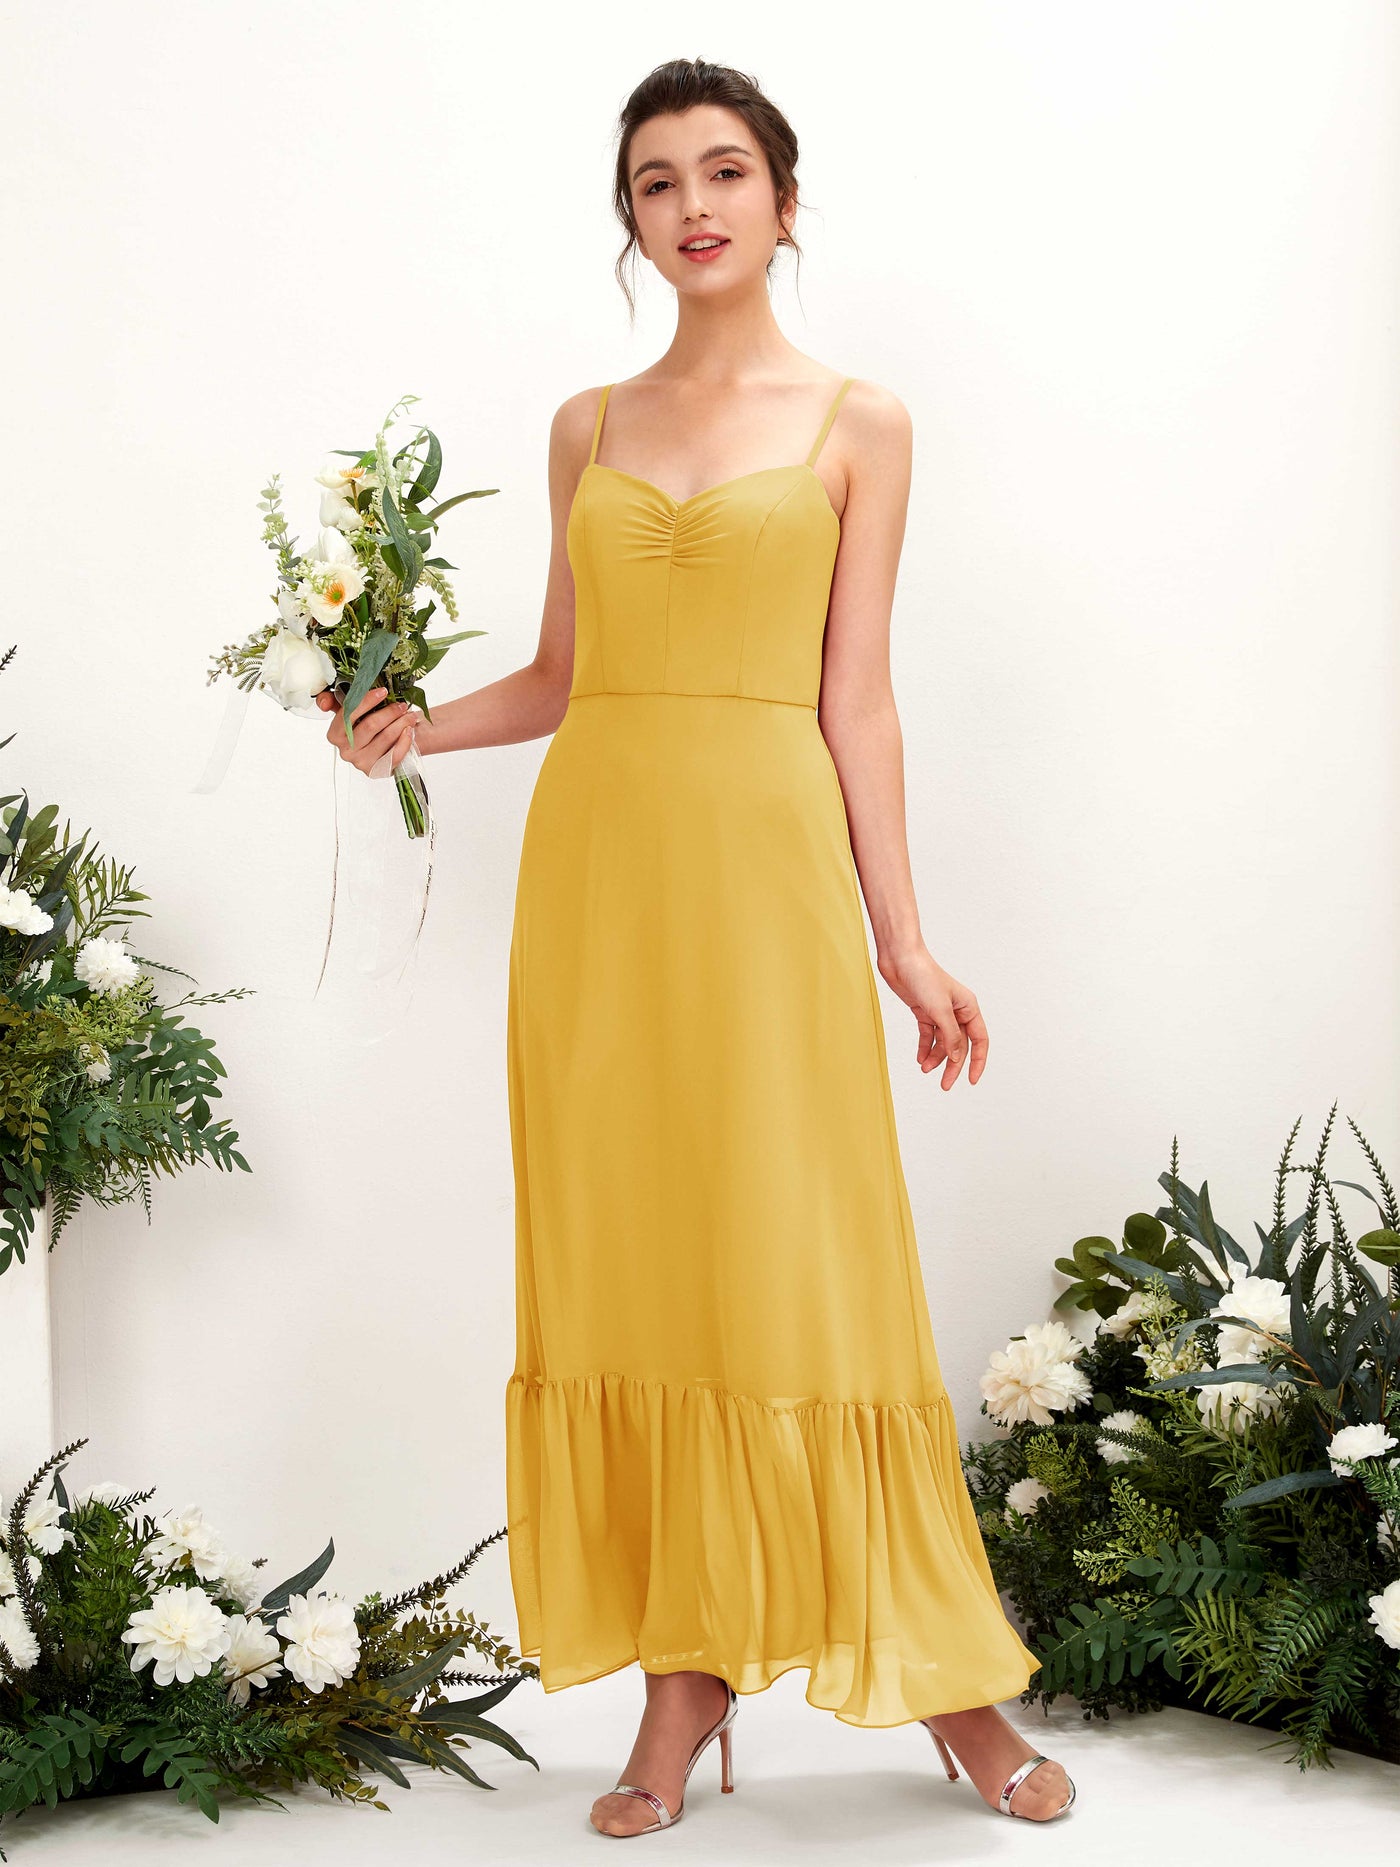 Spaghetti-straps Sweetheart Sleeveless Chiffon Bridesmaid Dress - Mustard Yellow (81223033)#color_mustard-yellow